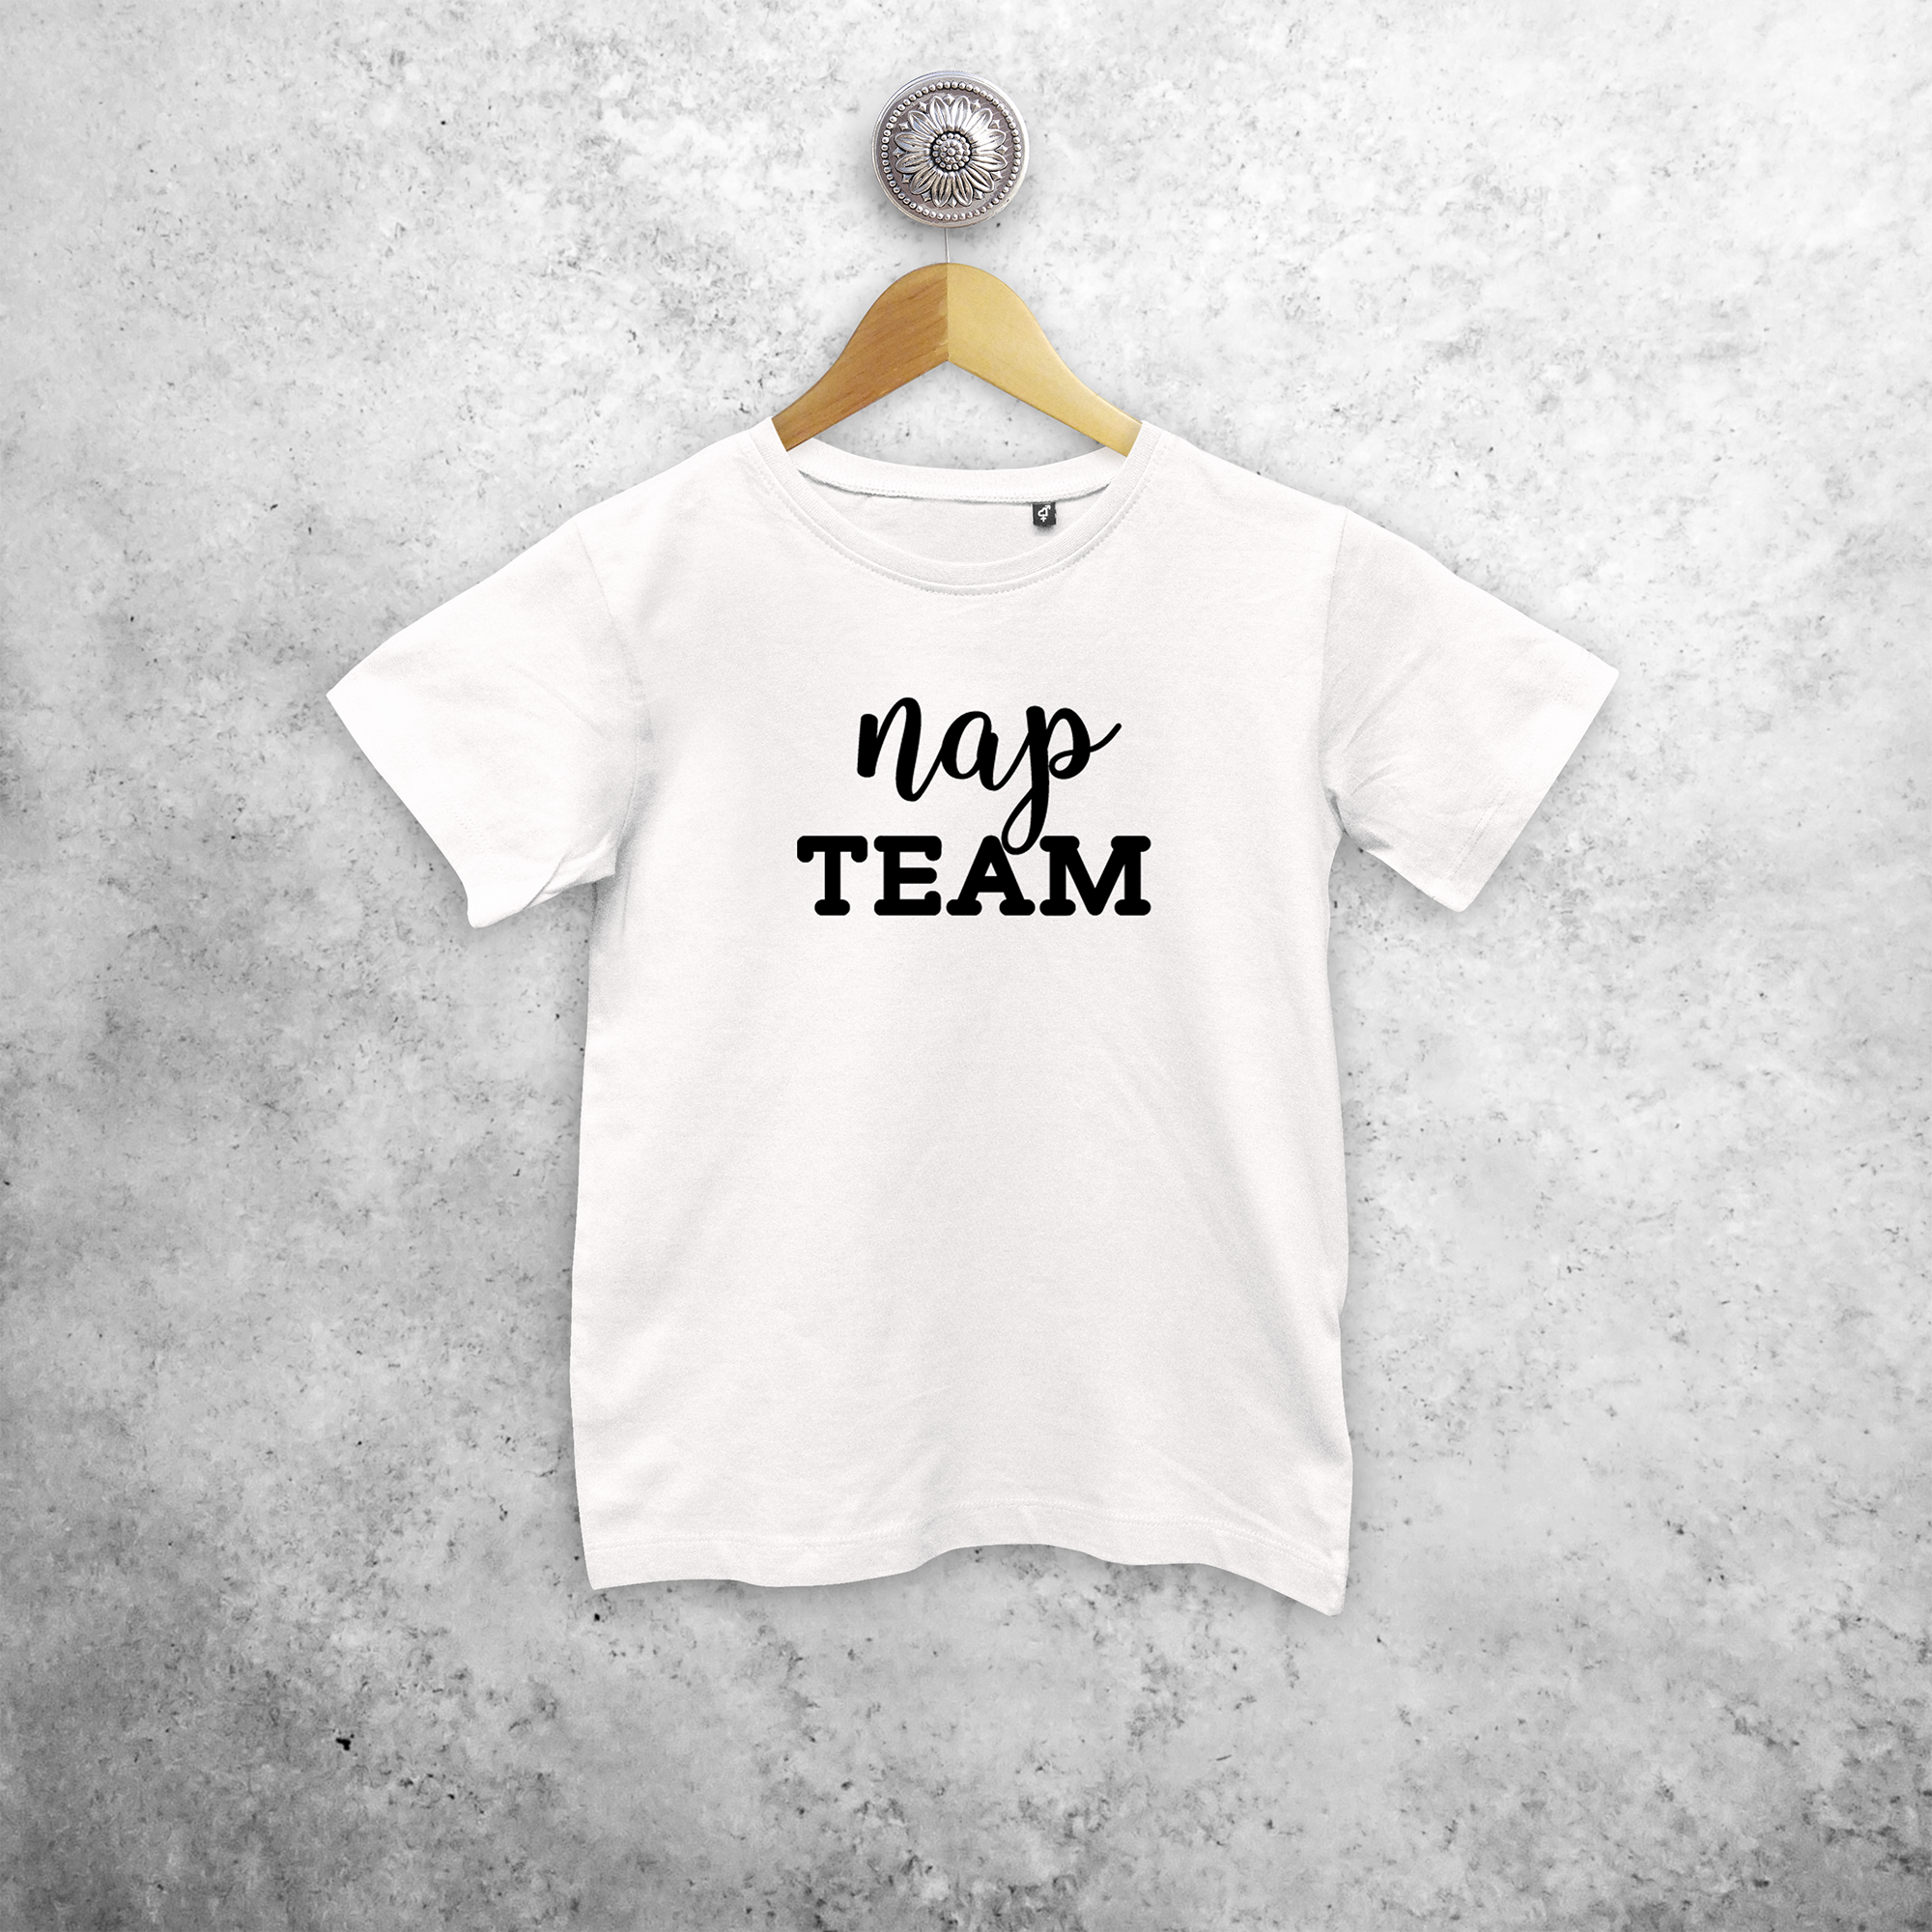 'Nap team' kids shortsleeve shirt